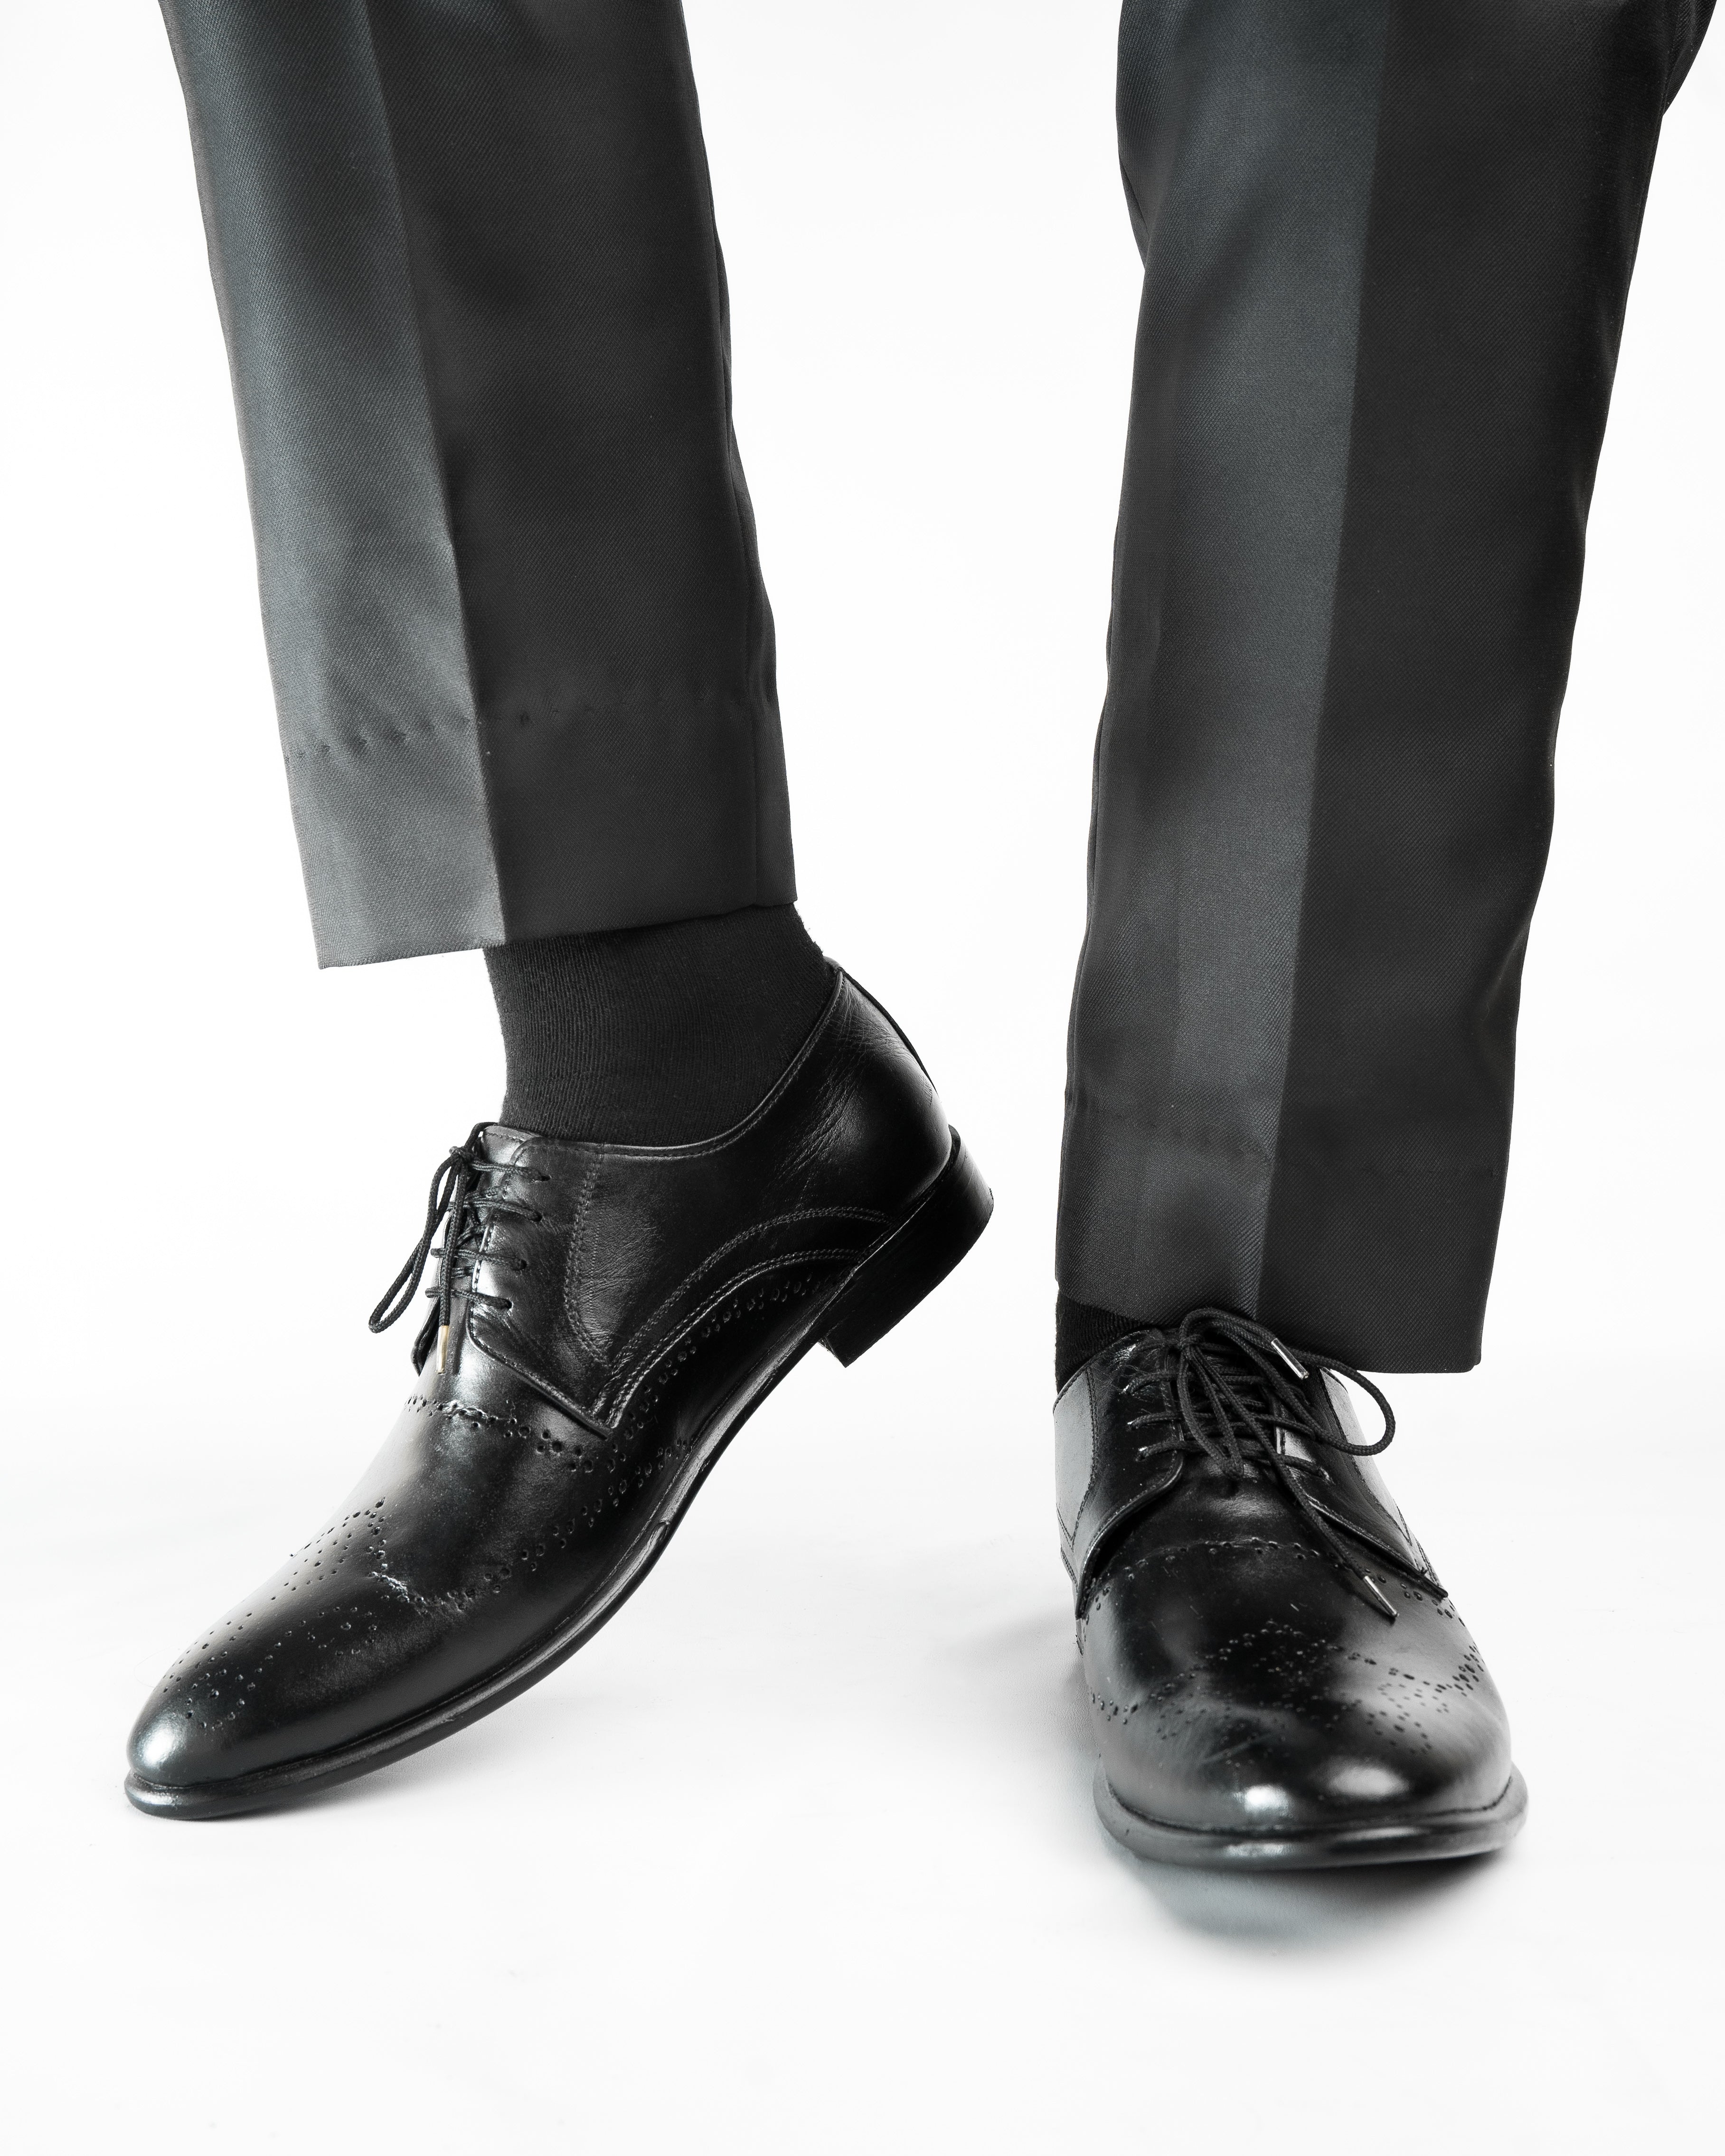 SNS11 Black formal Premium leather Shoes